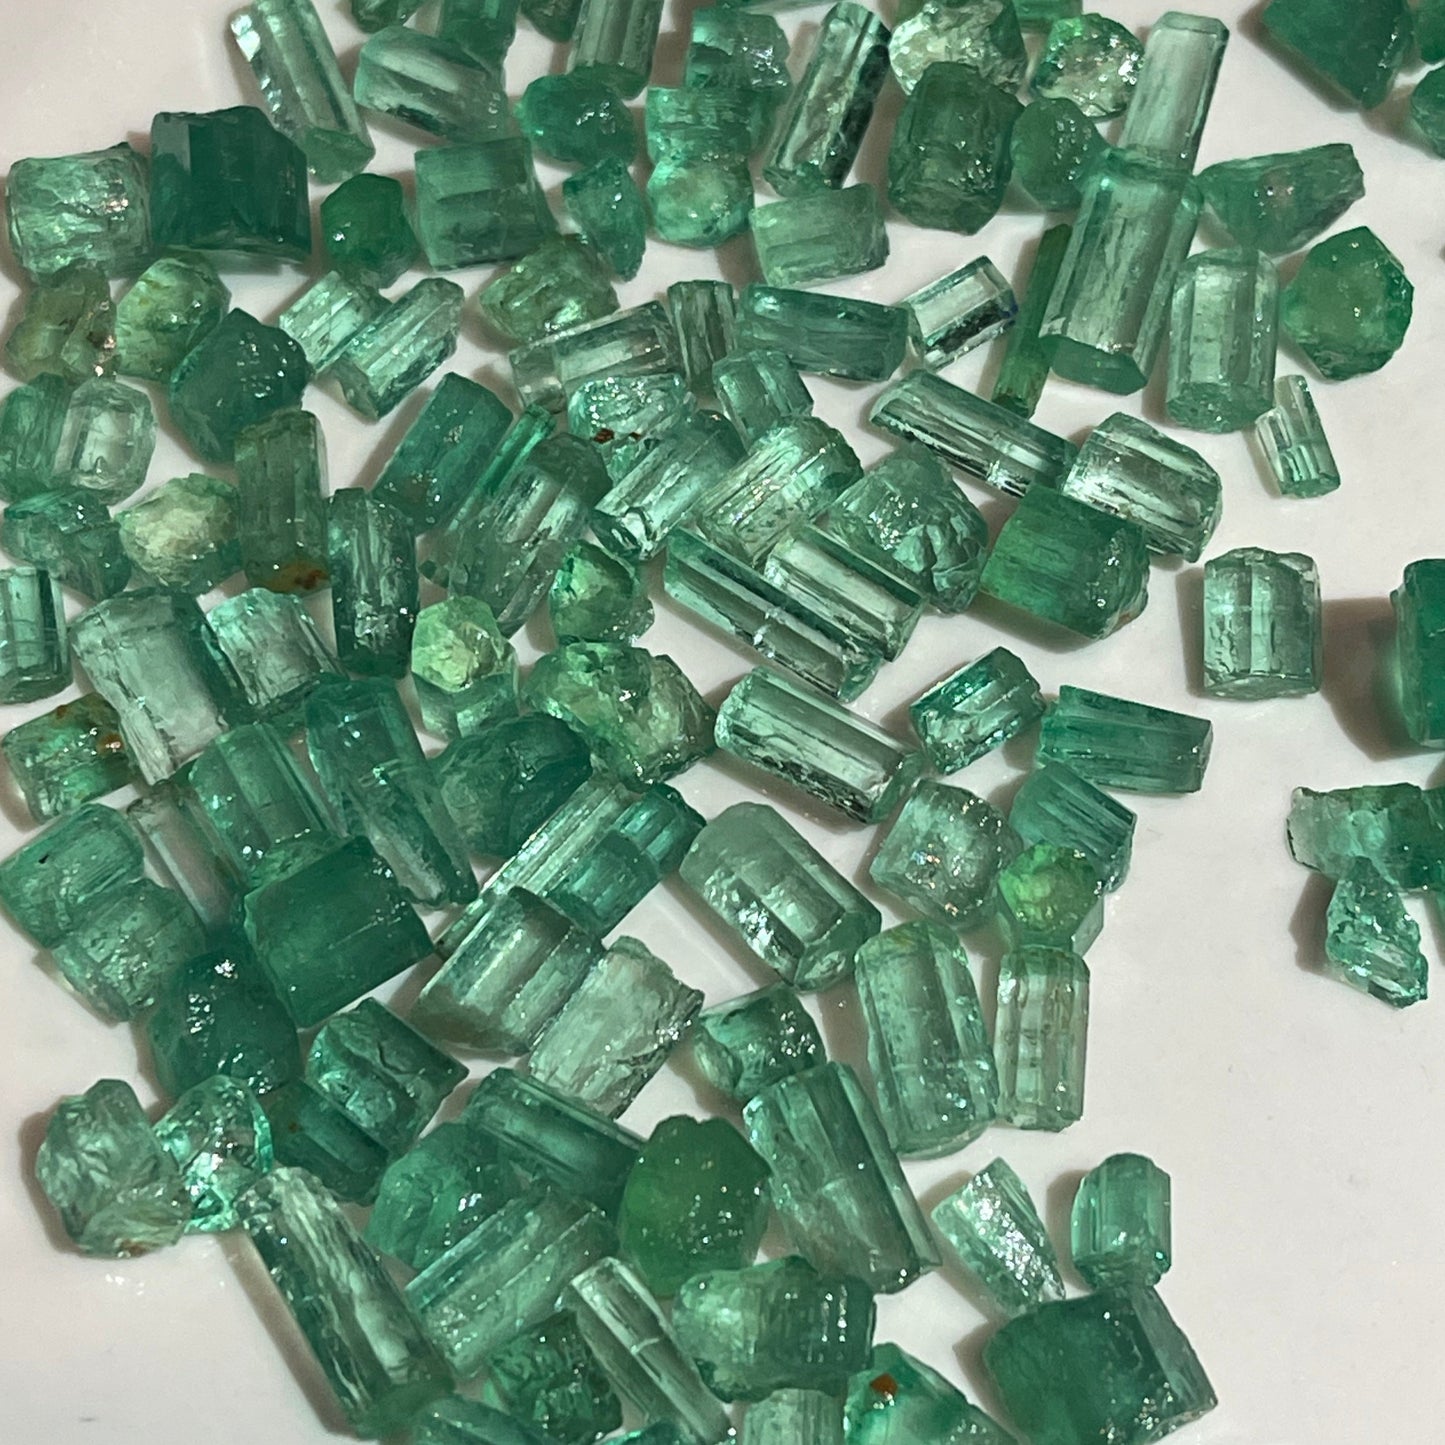 uncut emeralds stones for sale